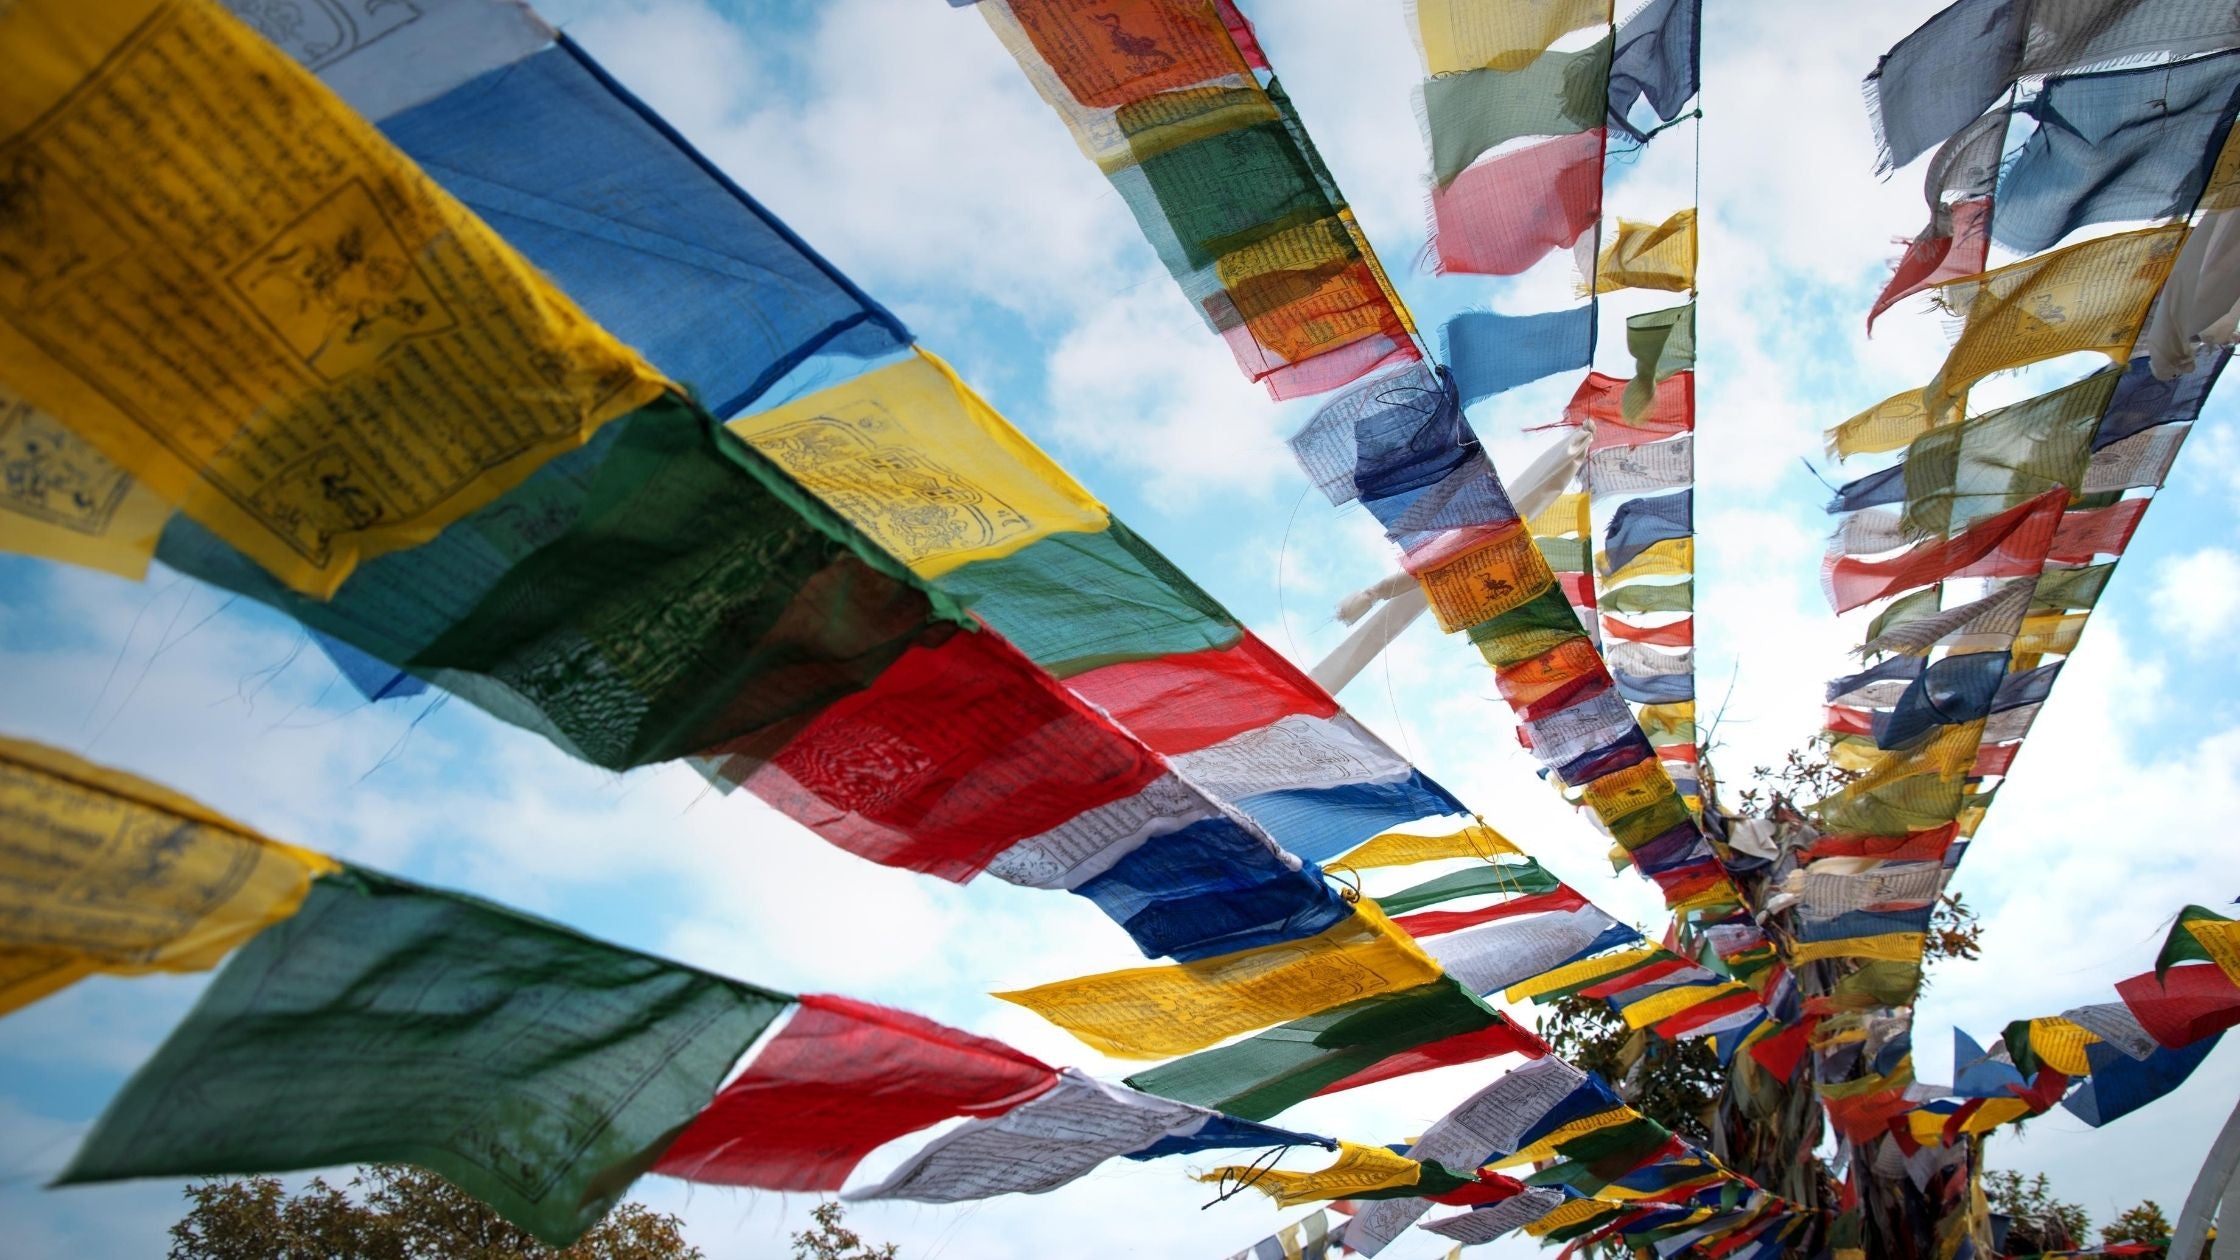 Ethical_cotton_Tibetan_Prayer_Flags_for_sale_australia_from_Nepal.jpg